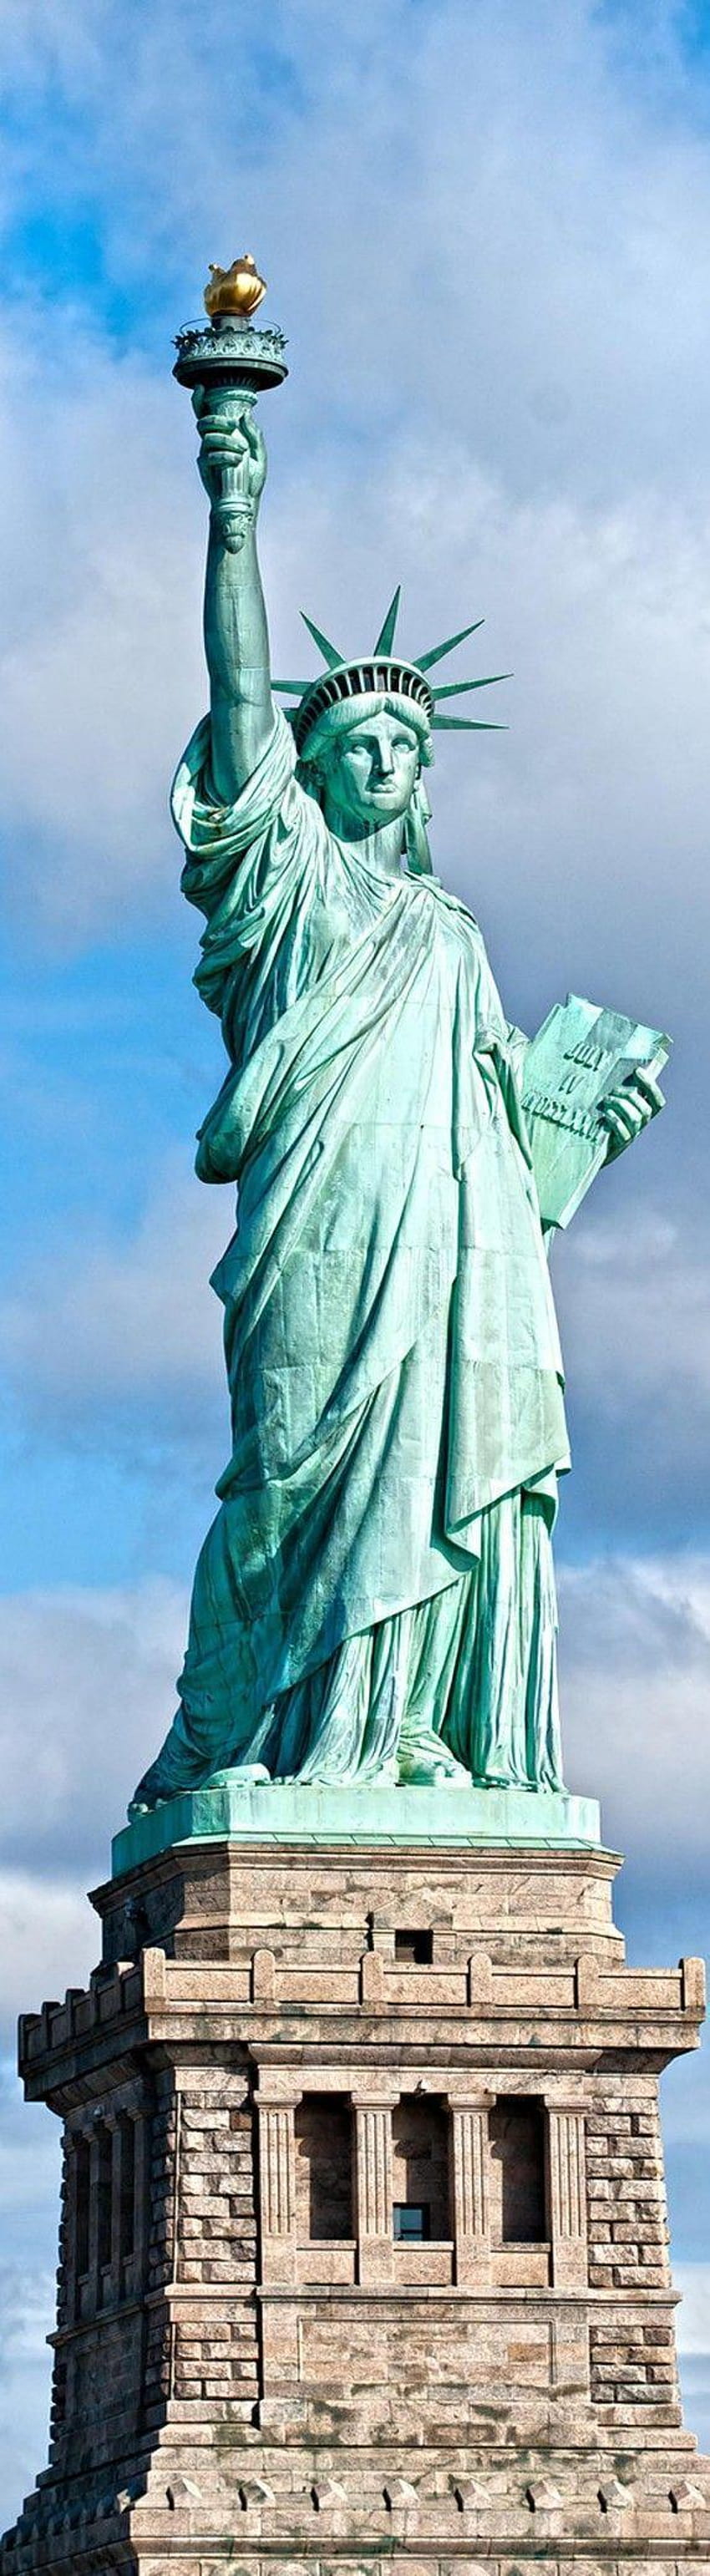 ベスト 2 自由の女神像、世界を啓発する自由 HD電話の壁紙